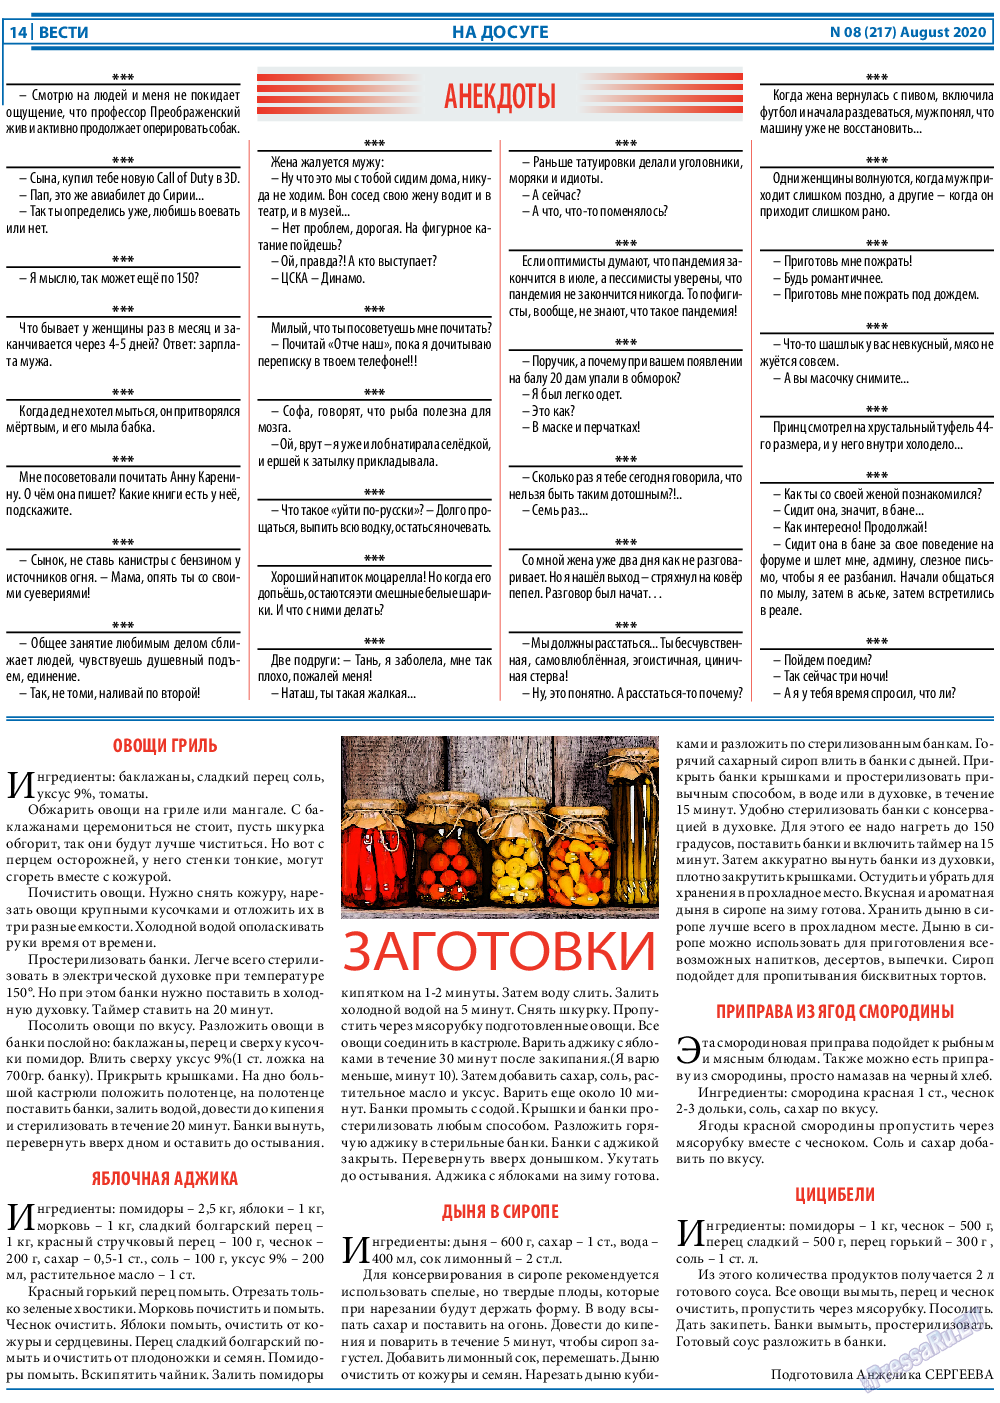 Вести, газета. 2020 №8 стр.14